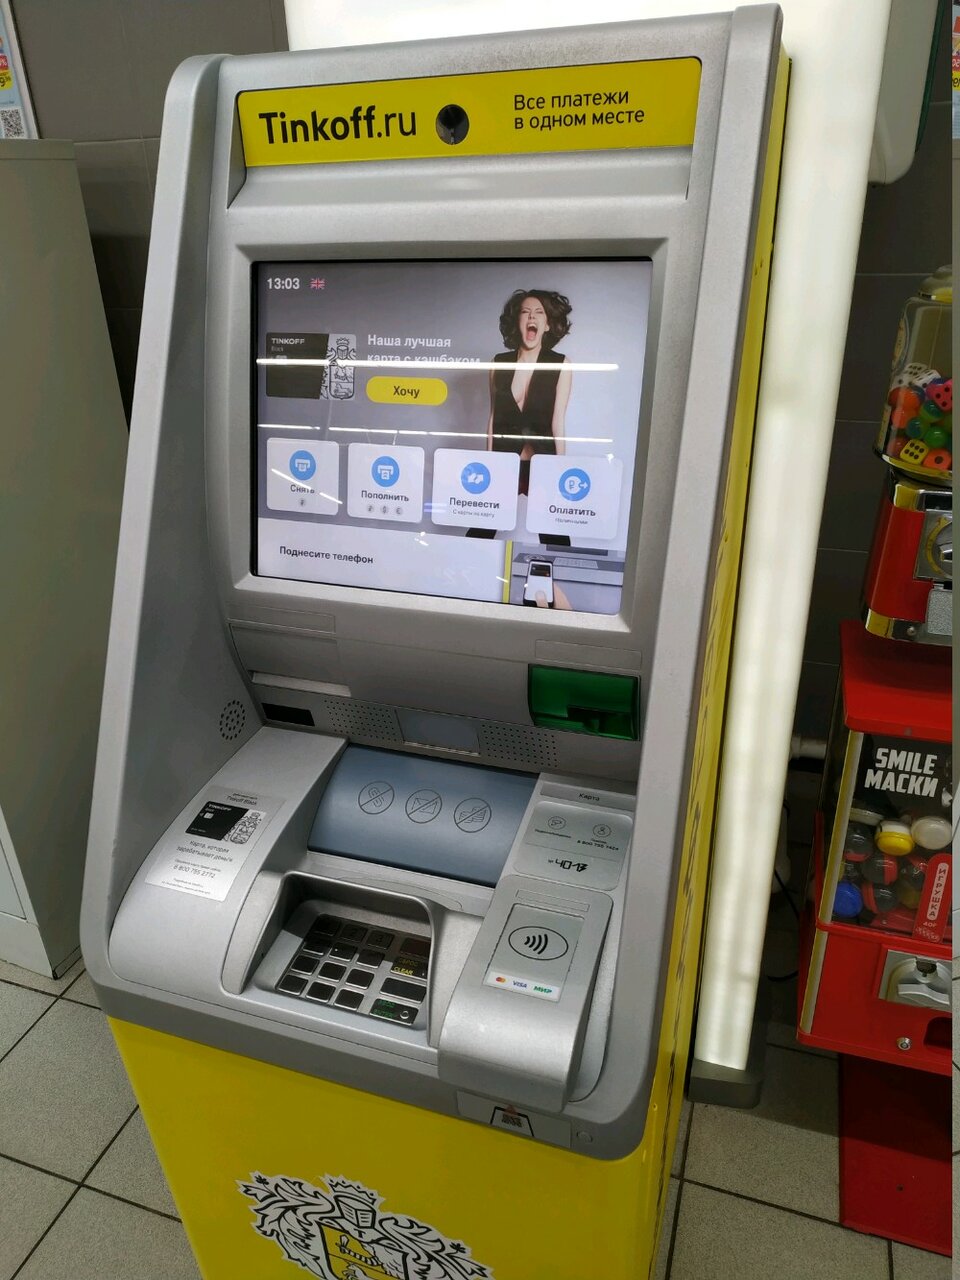 Закинуть на тинькофф через банкомат сбербанка